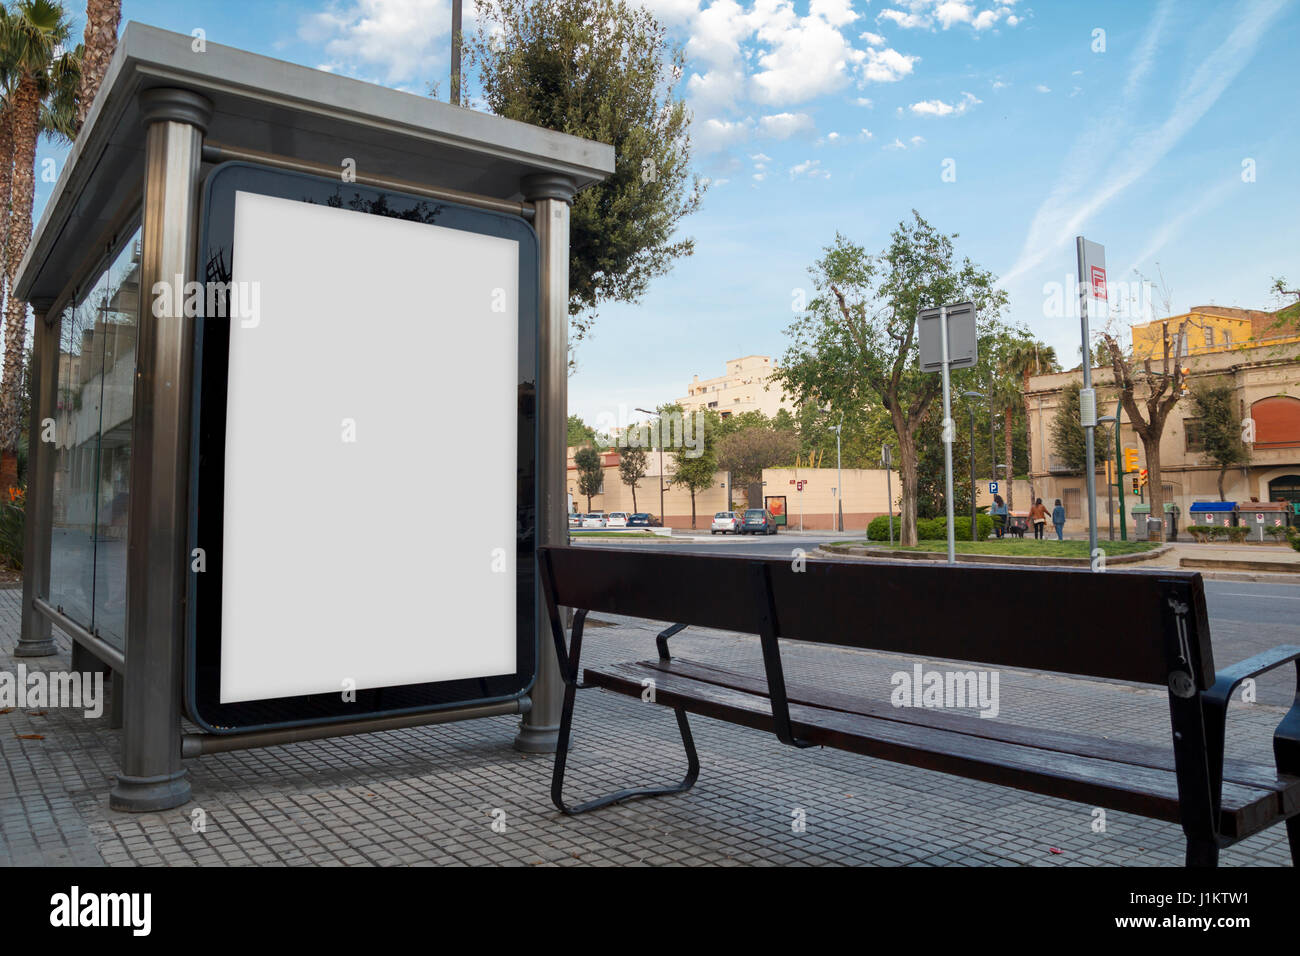 Annuncio vuota in un bus shelter, gratuitamente promo Foto Stock